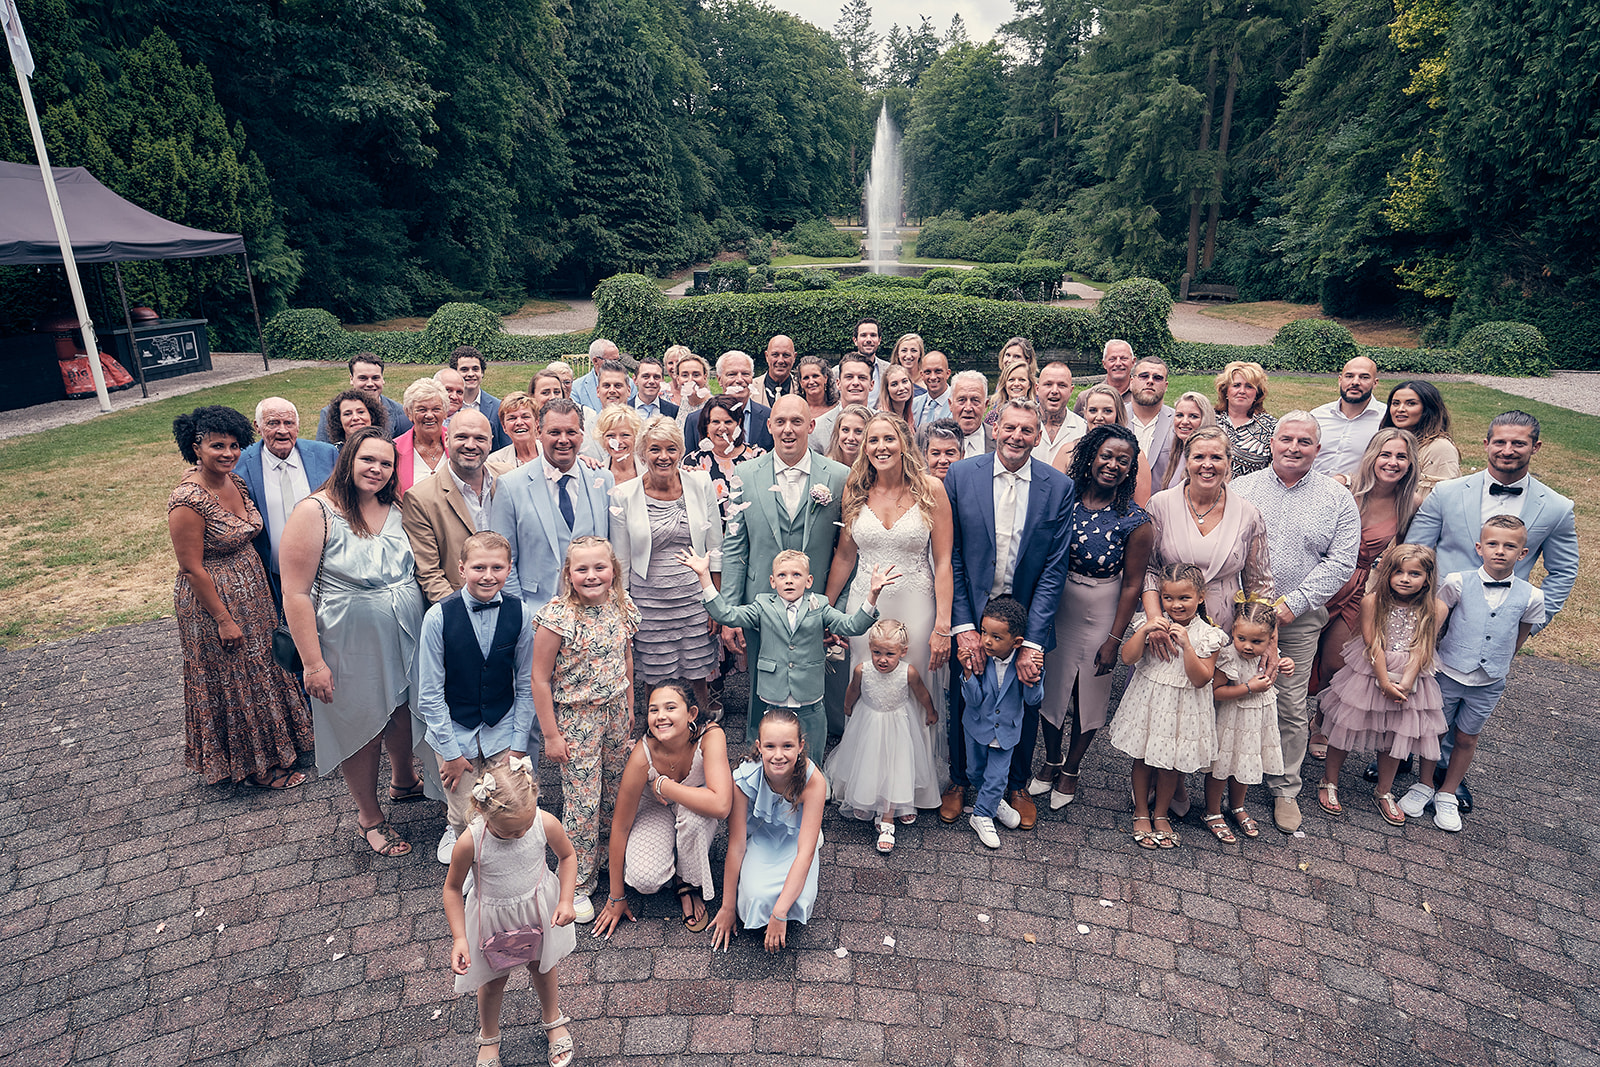 Trouwfotograaf Kasteel Hooge Vuursche in Baarn - De bruidsfotografie van Dennis en Kim - groepsfoto